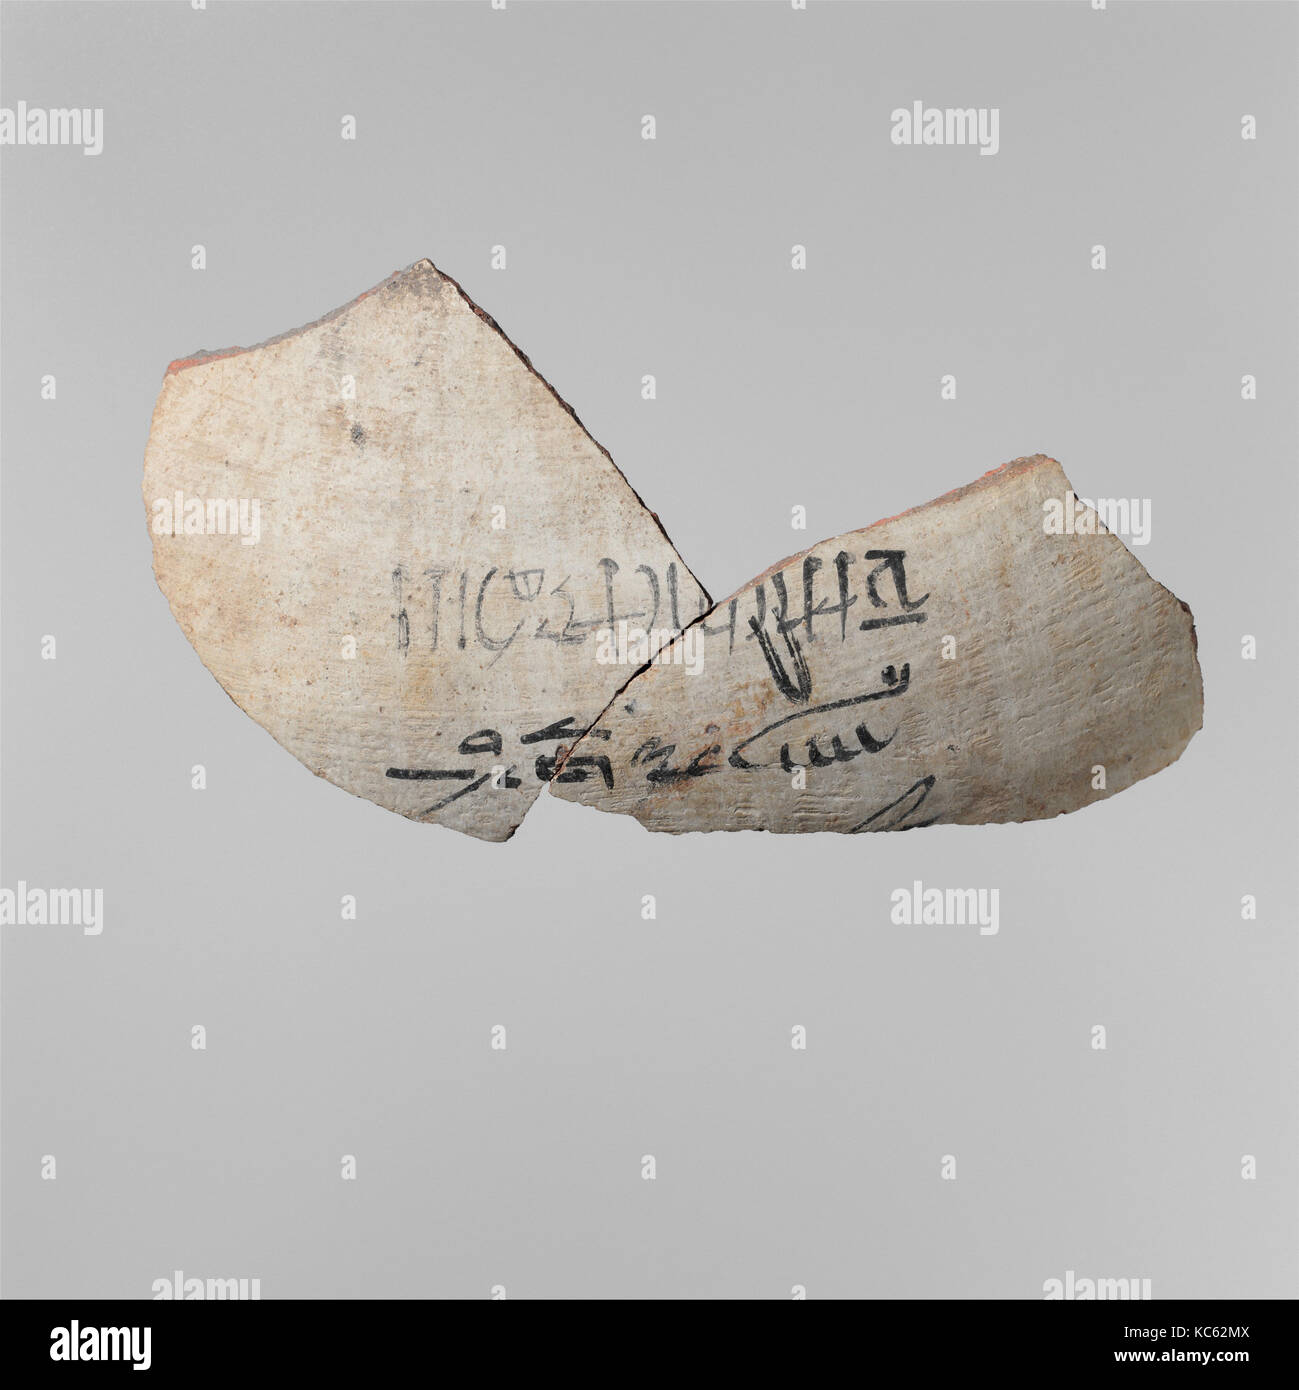 Fragement da un vaso con un cartellino di identificazione contenuto come il miele, ca. 1390-1352 A.C. Foto Stock